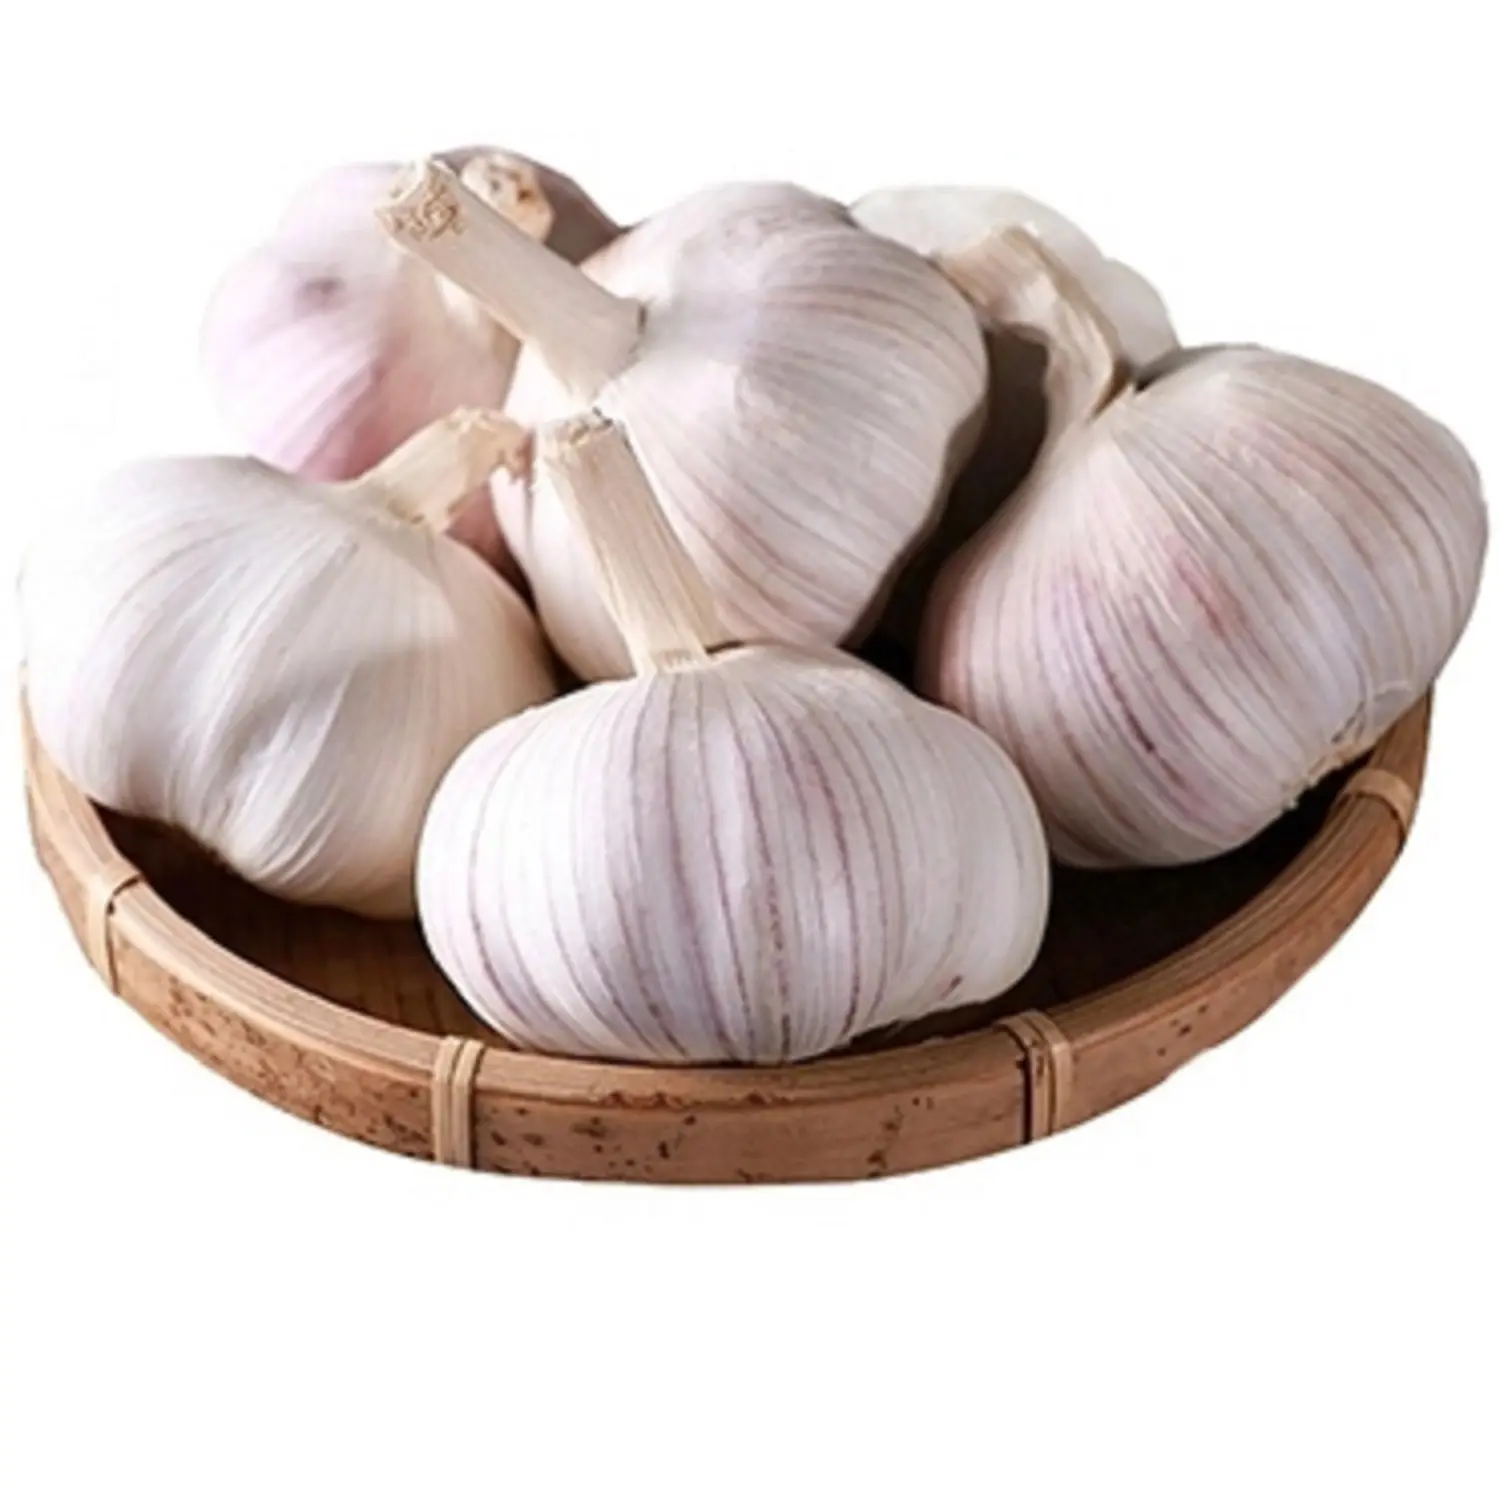 Low Price Fresh Garlic White Garlic Normal White Garlic